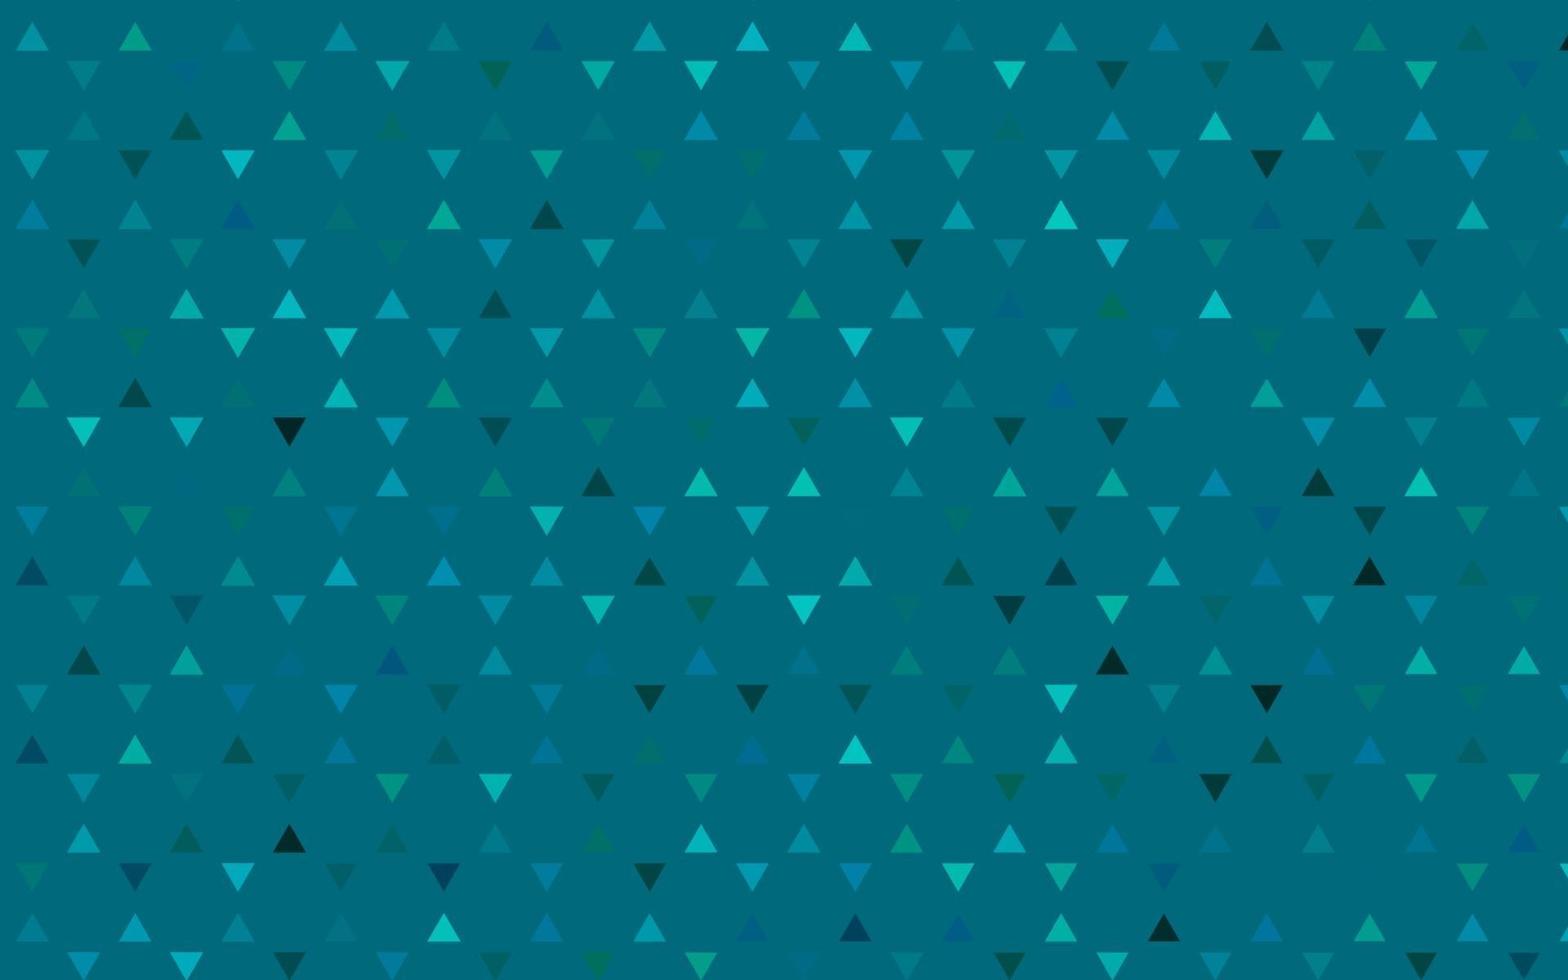 luz azul padrão sem emenda de vetor em estilo poligonal.